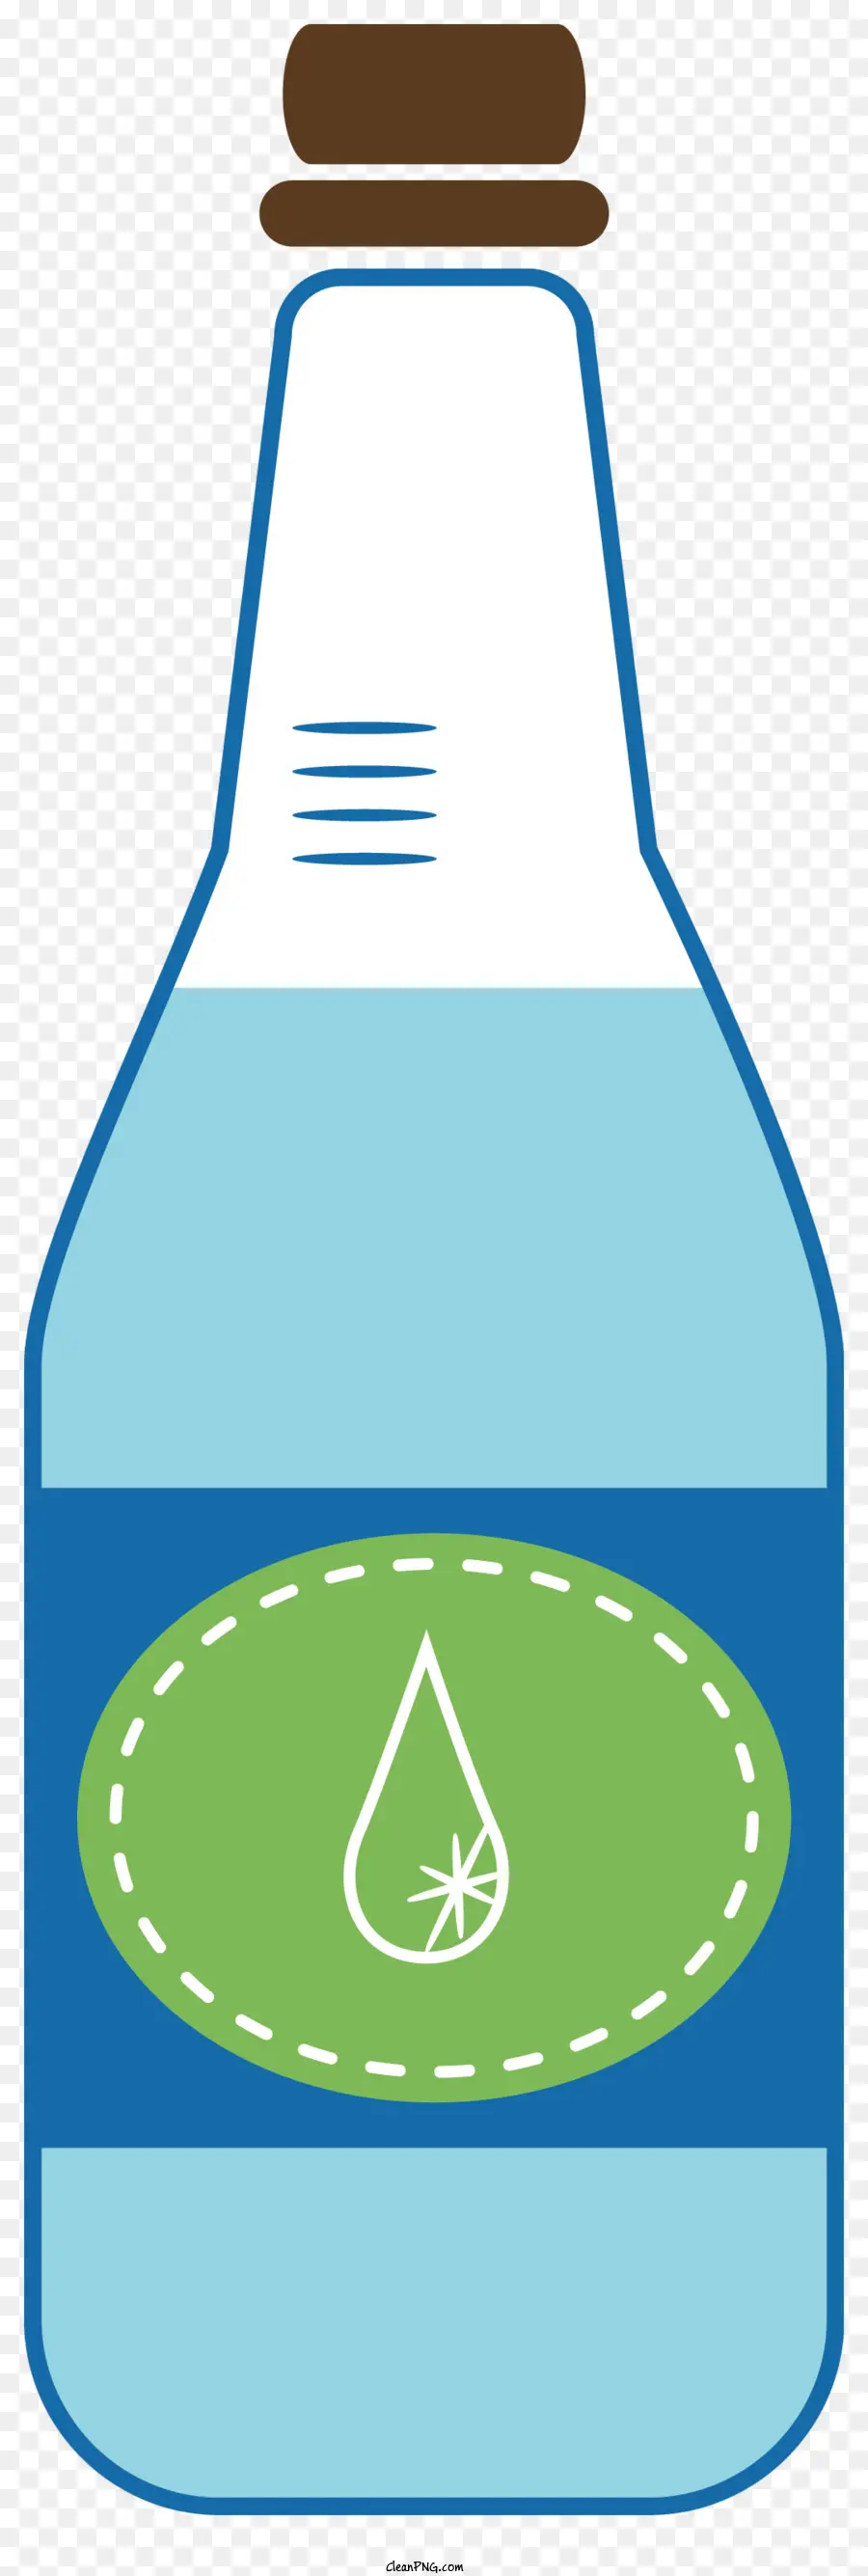 Kunststoff Flasche - Wasser in Plastikflasche mit grüner Kappe